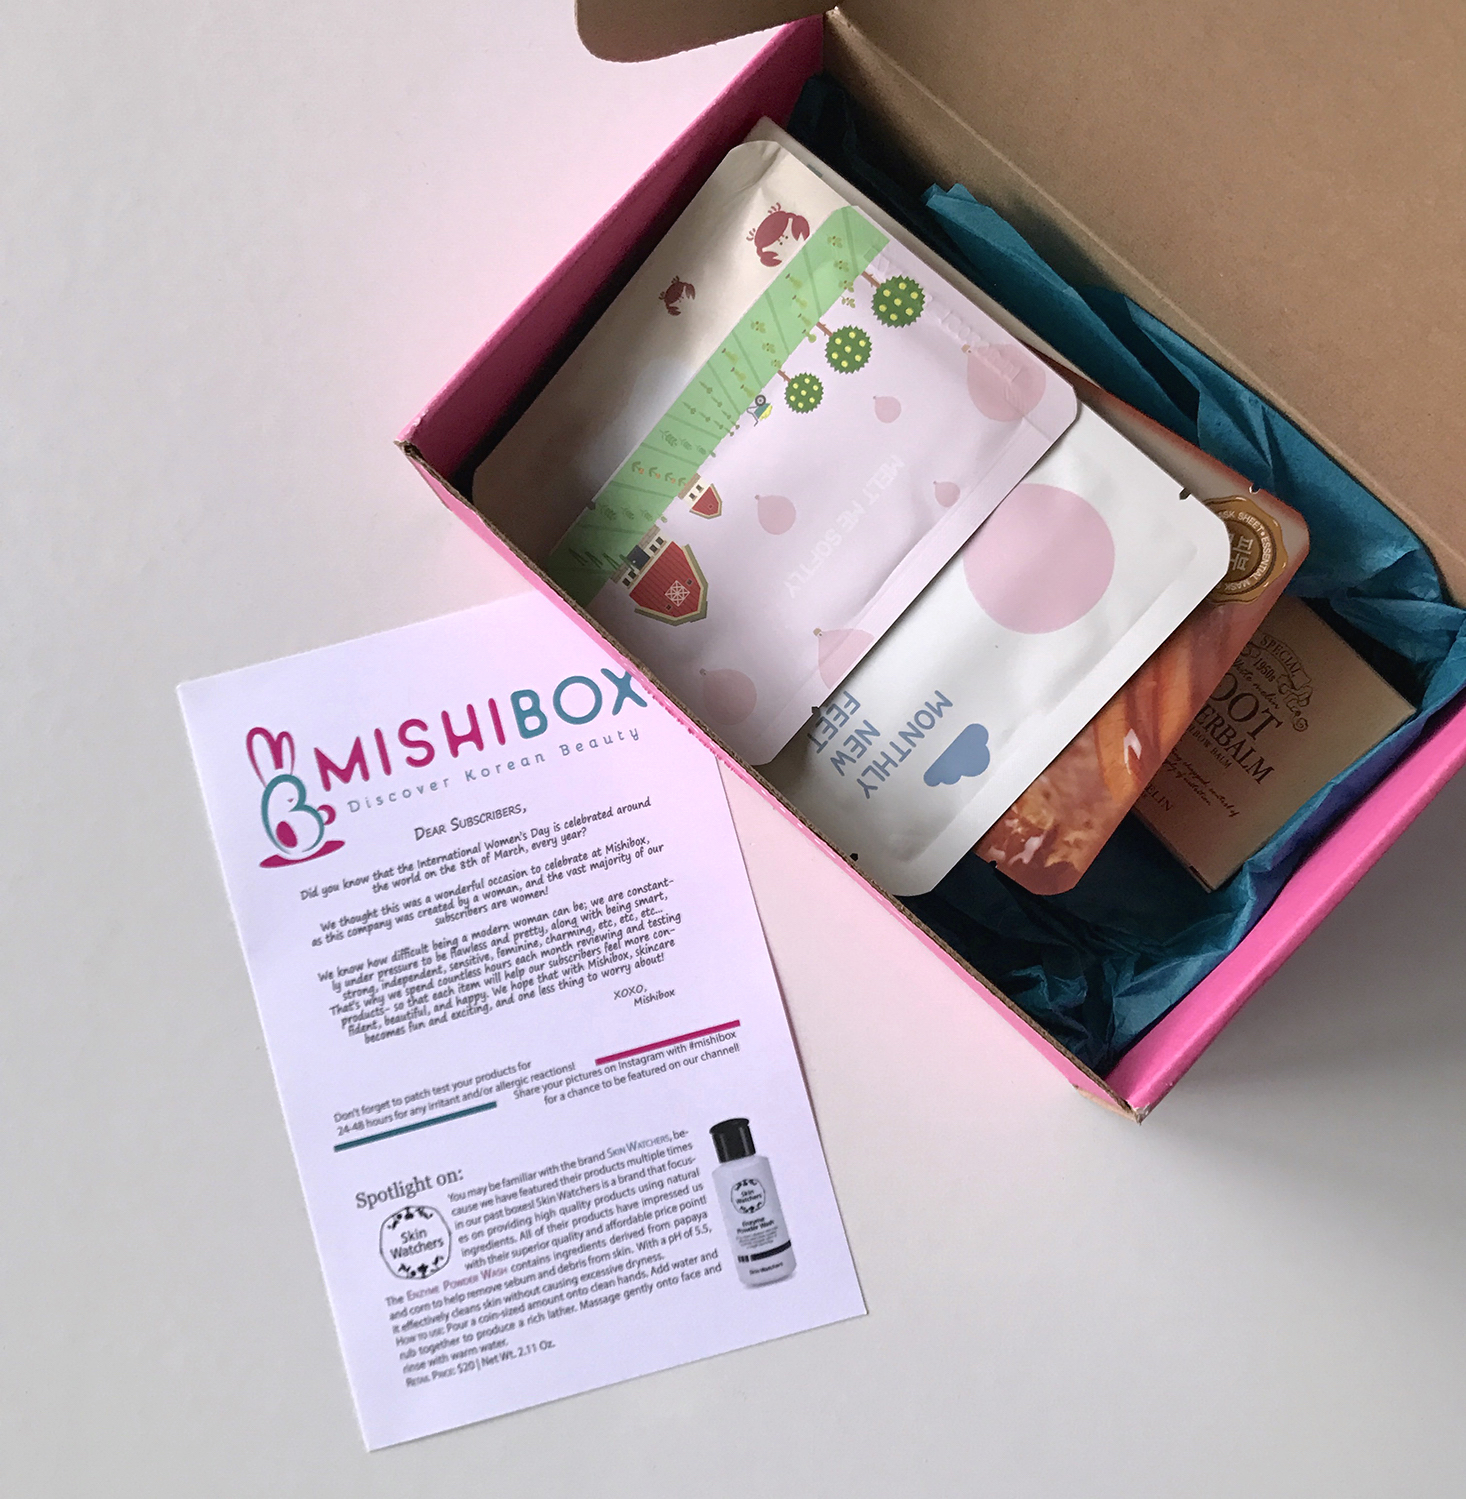 Mishibox-March-2017-Box-First-Look